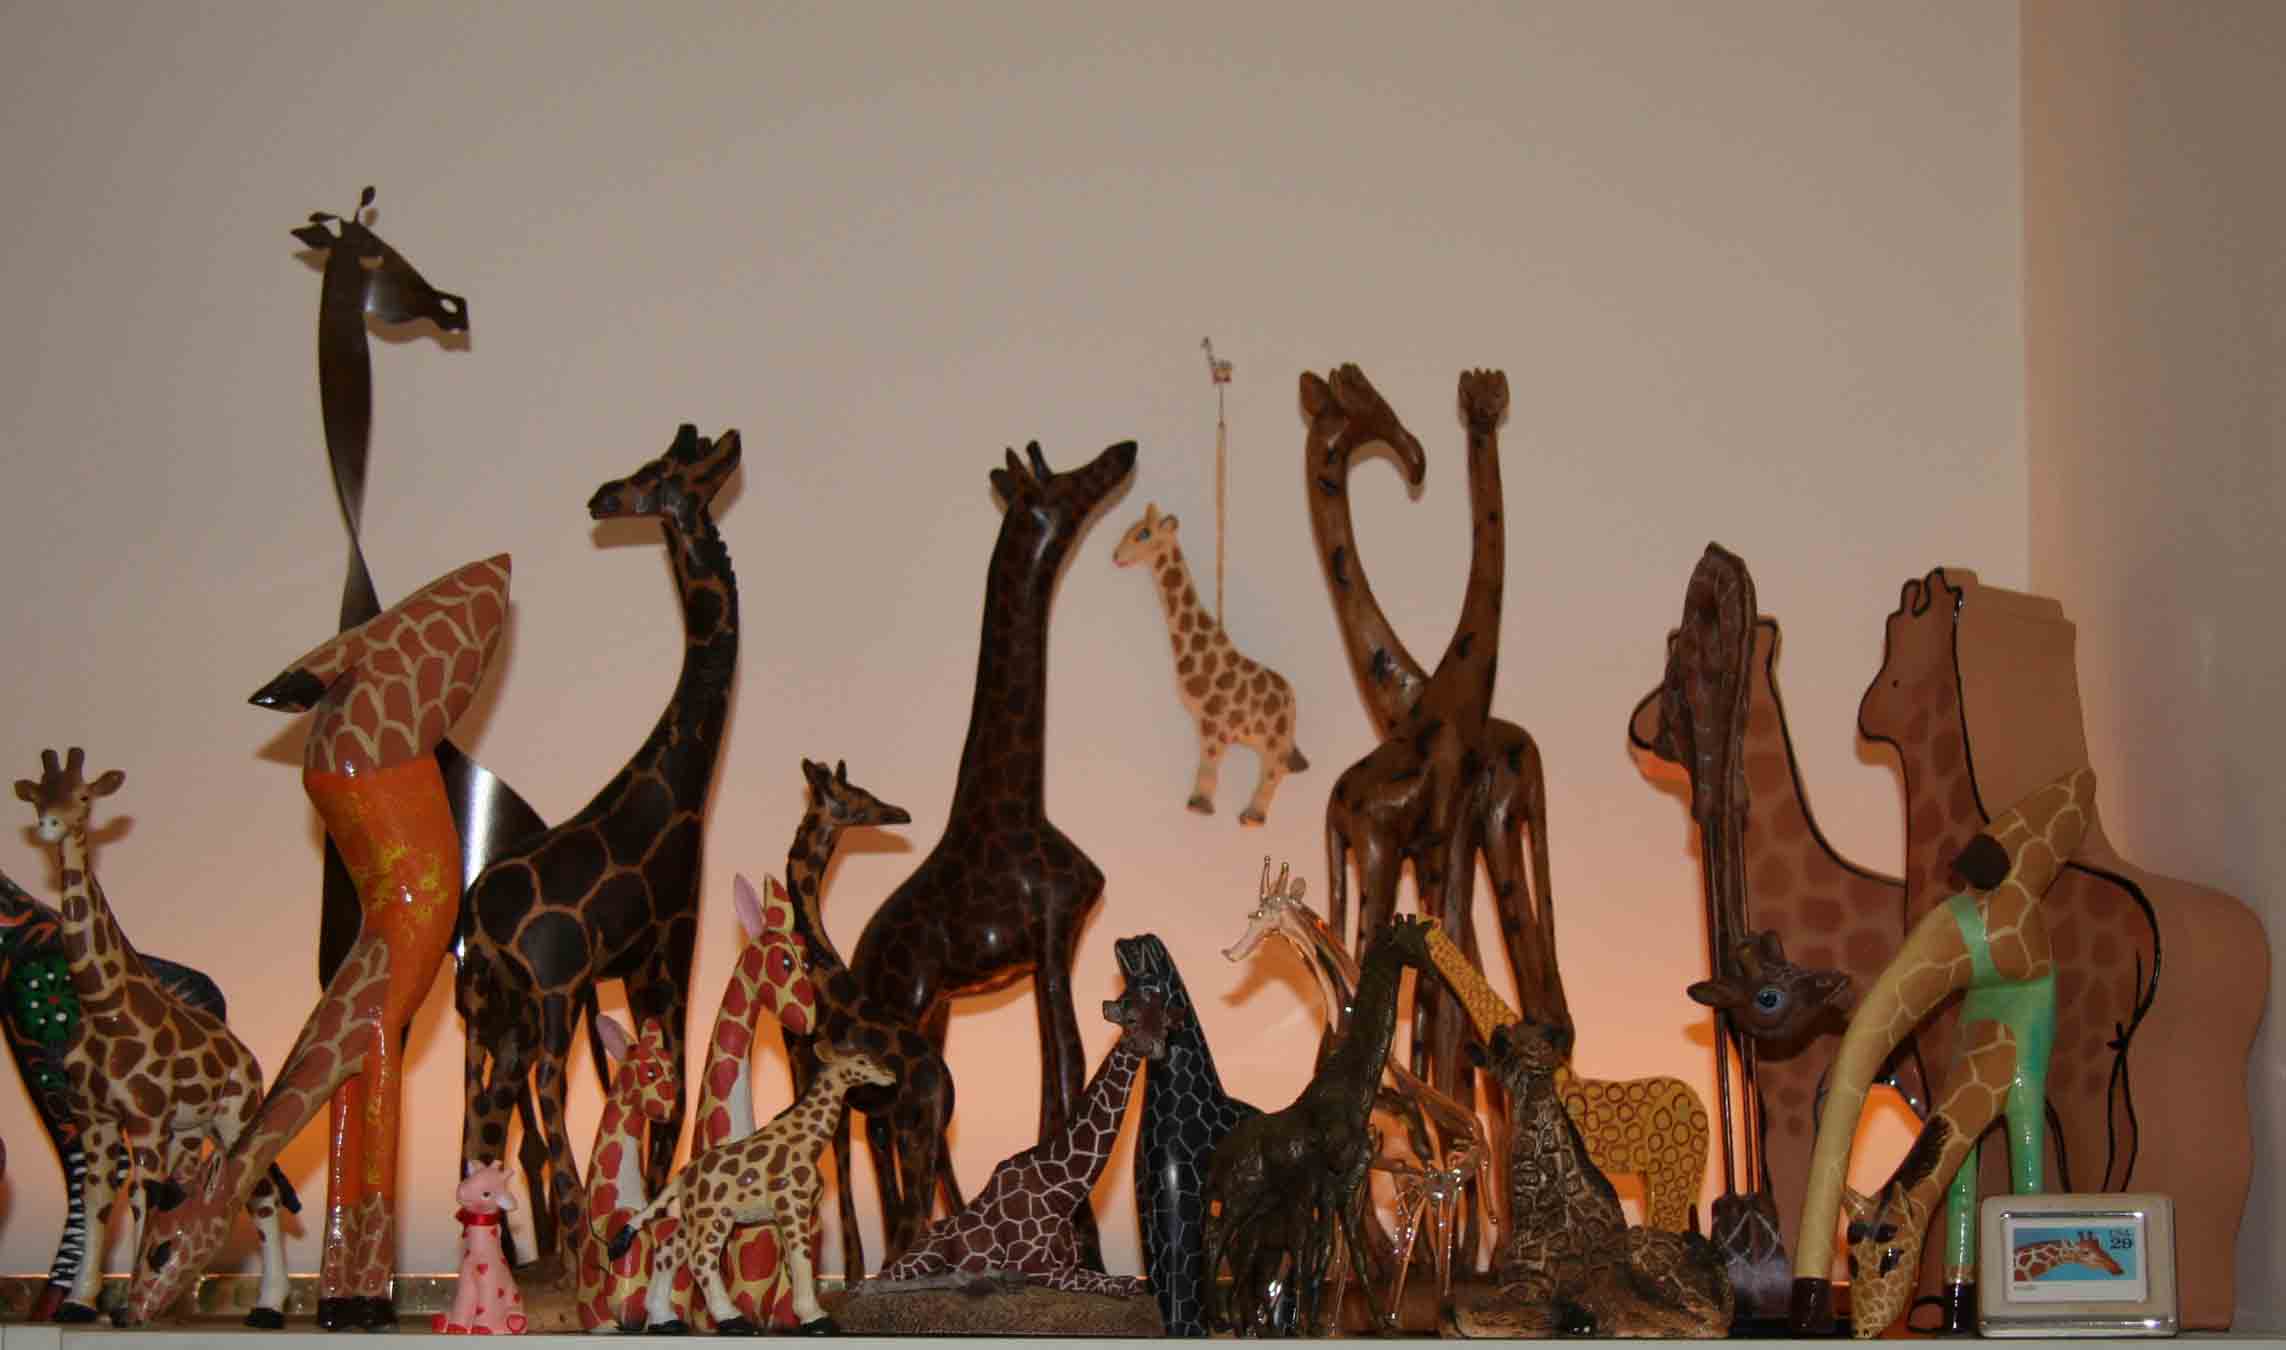 more damned giraffes